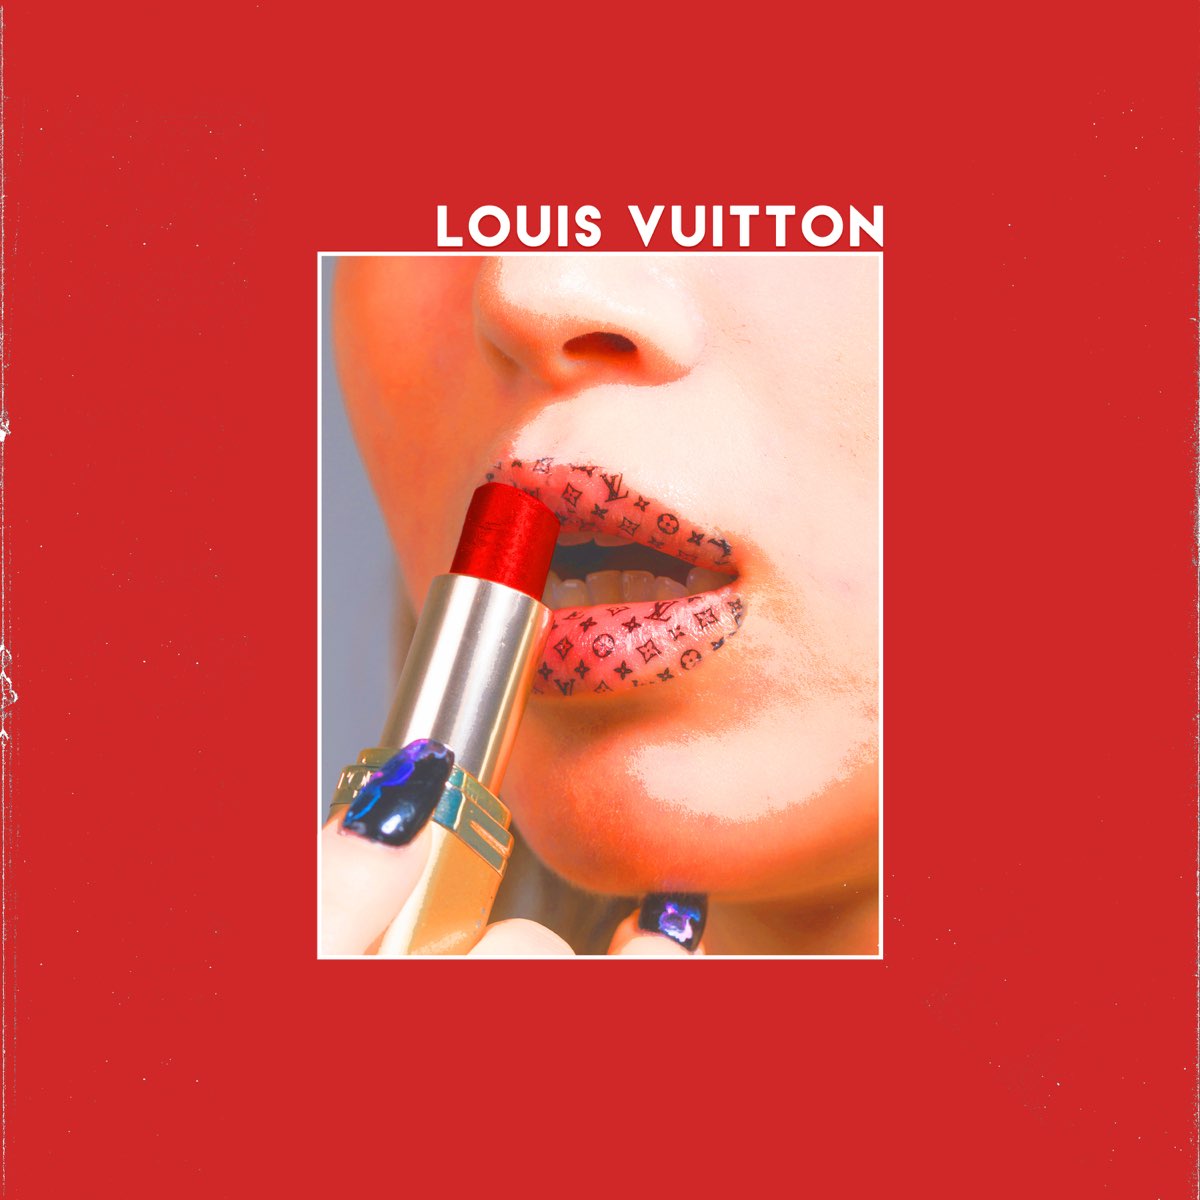 Louis Vuitton - Single by Alicœurbrisé on Apple Music